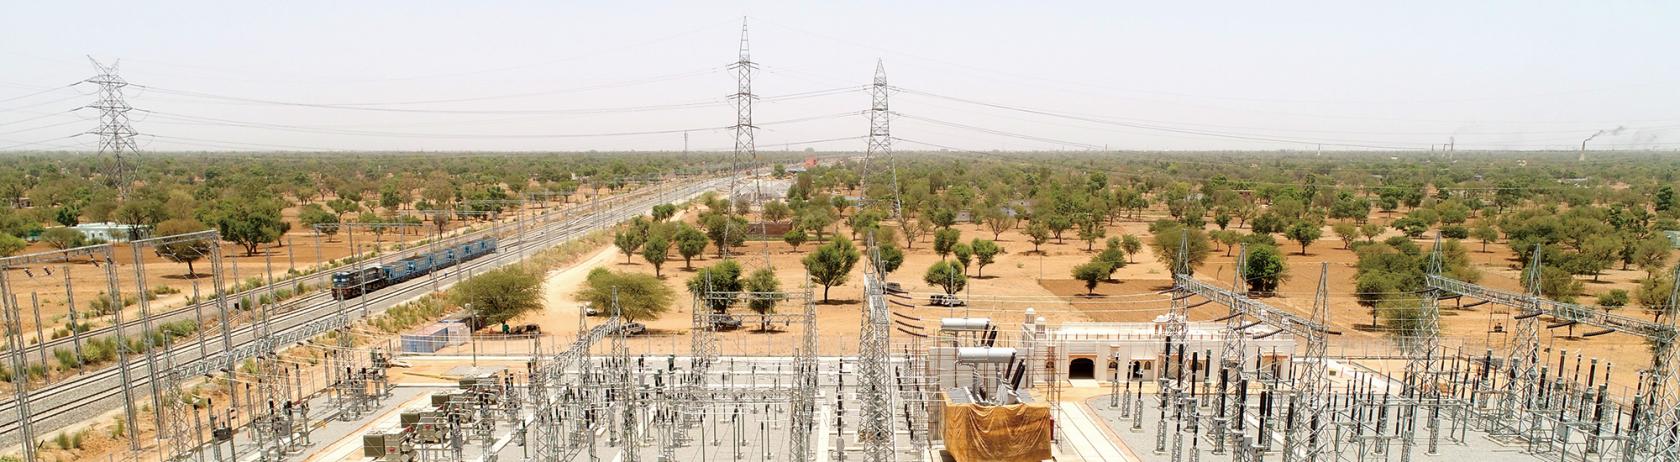 变电站建在沙漠铁路旁;以确保稳定的电力供应,变电站内建等距总距离为1500公里。